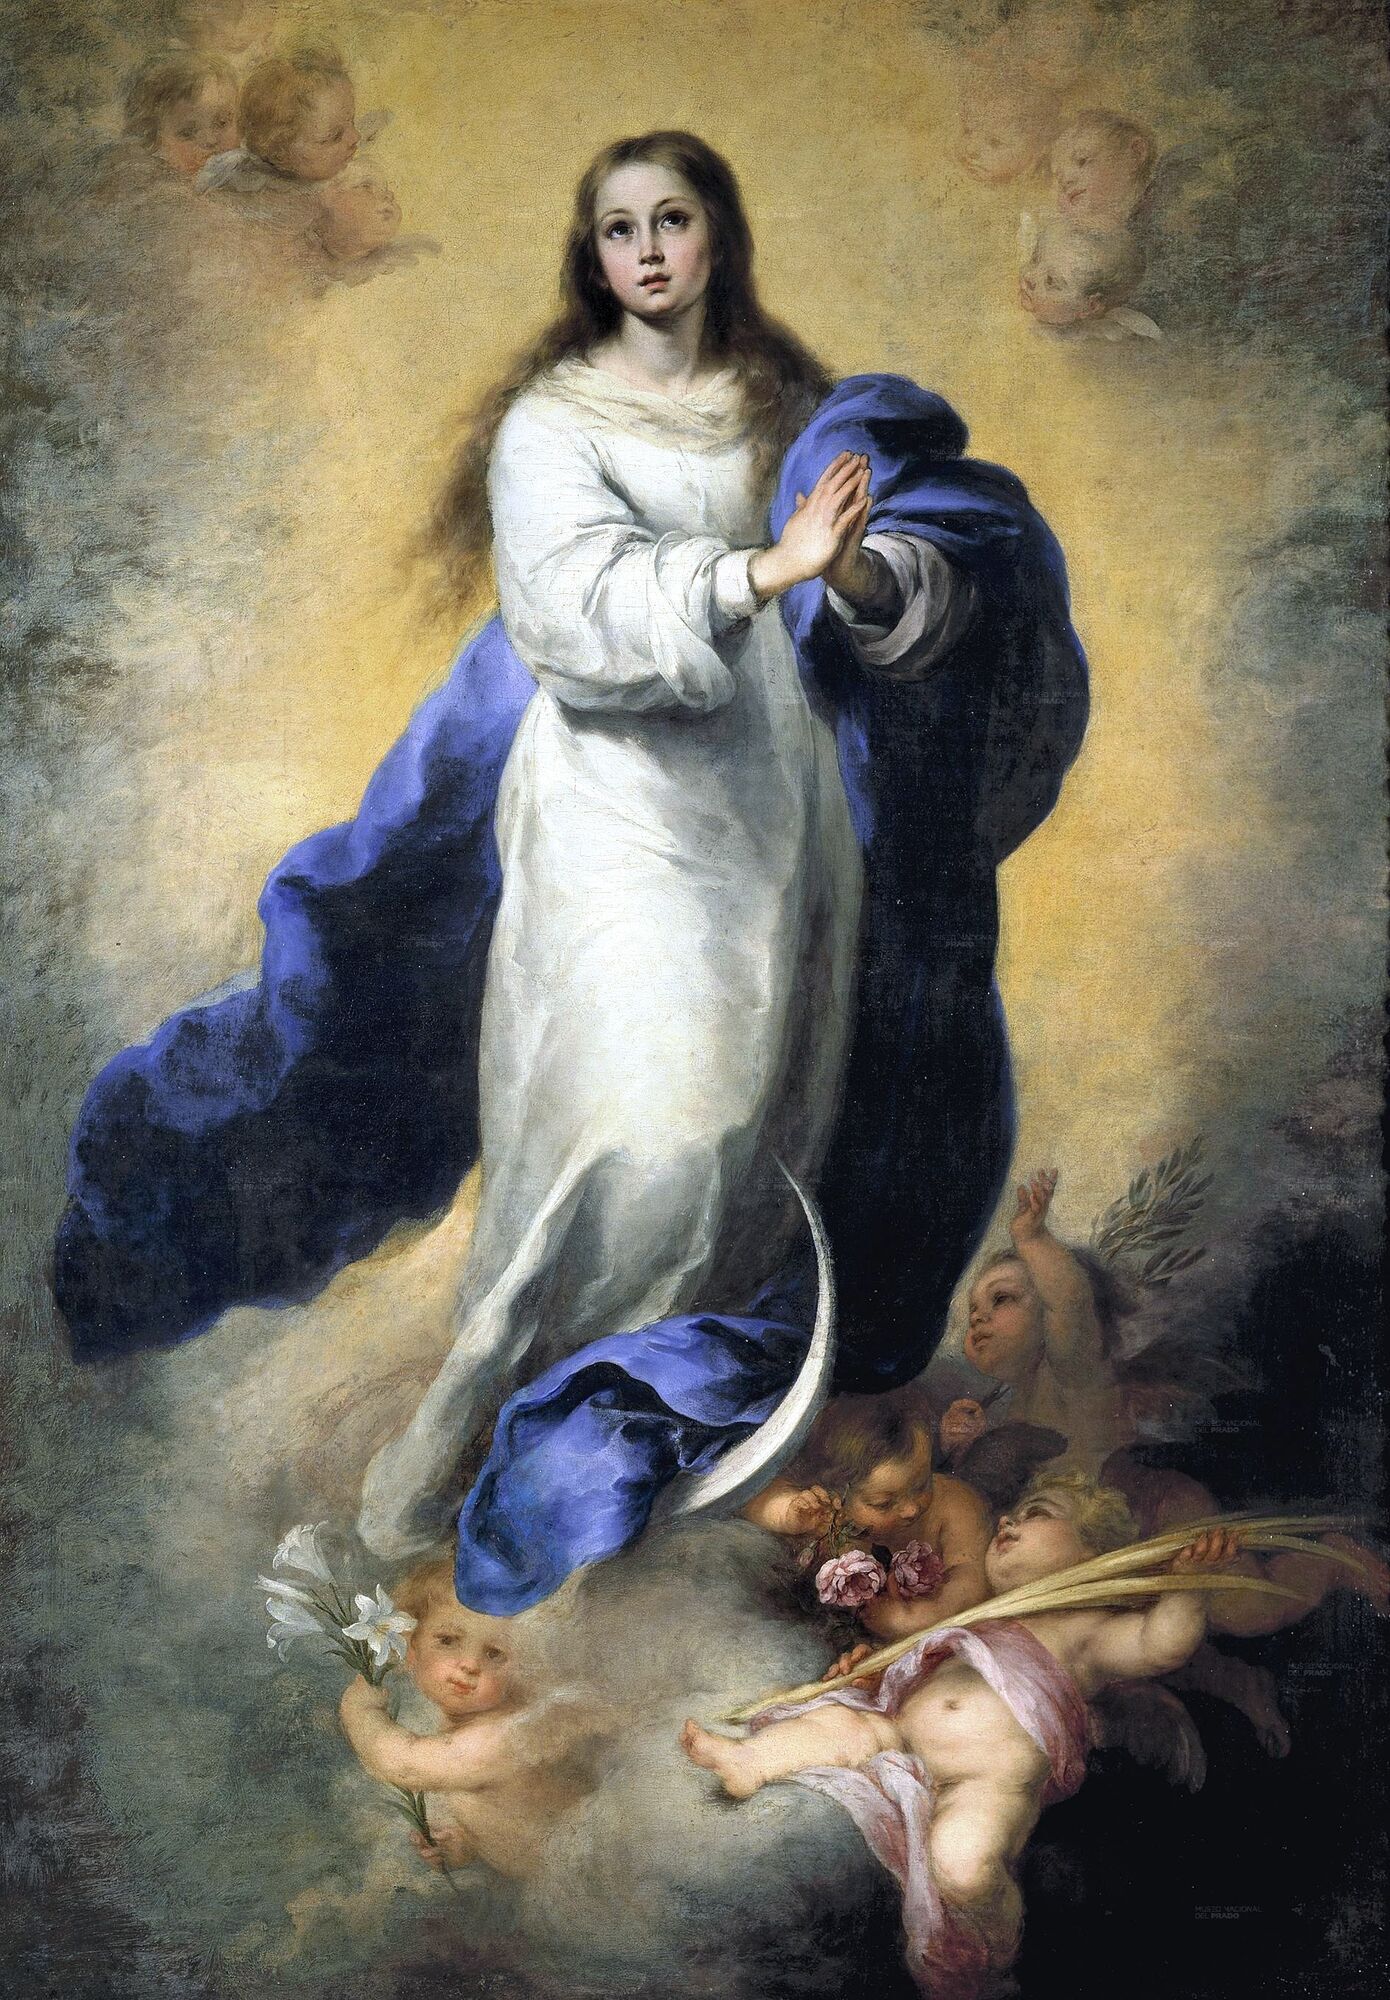 День непорочного зачатия Девы Марии у католиков